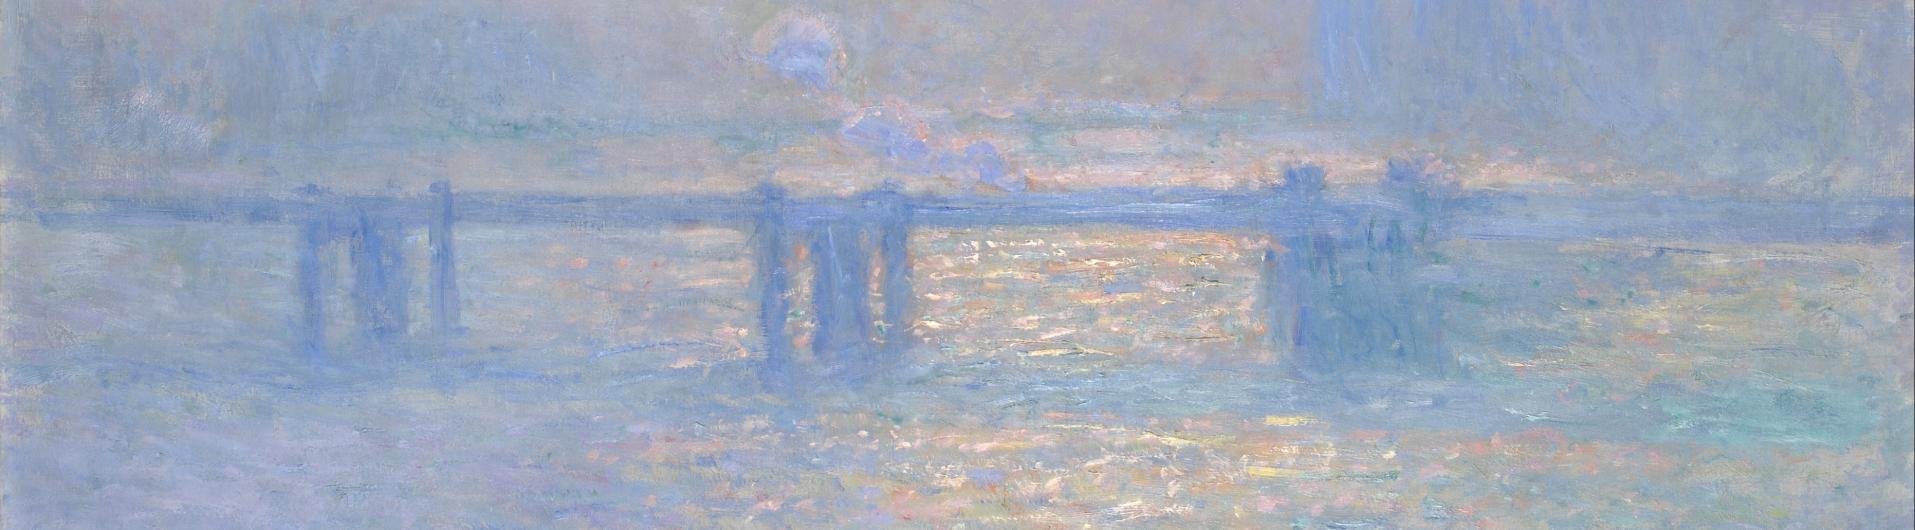 Monet, Tamise vue de Charing Cross